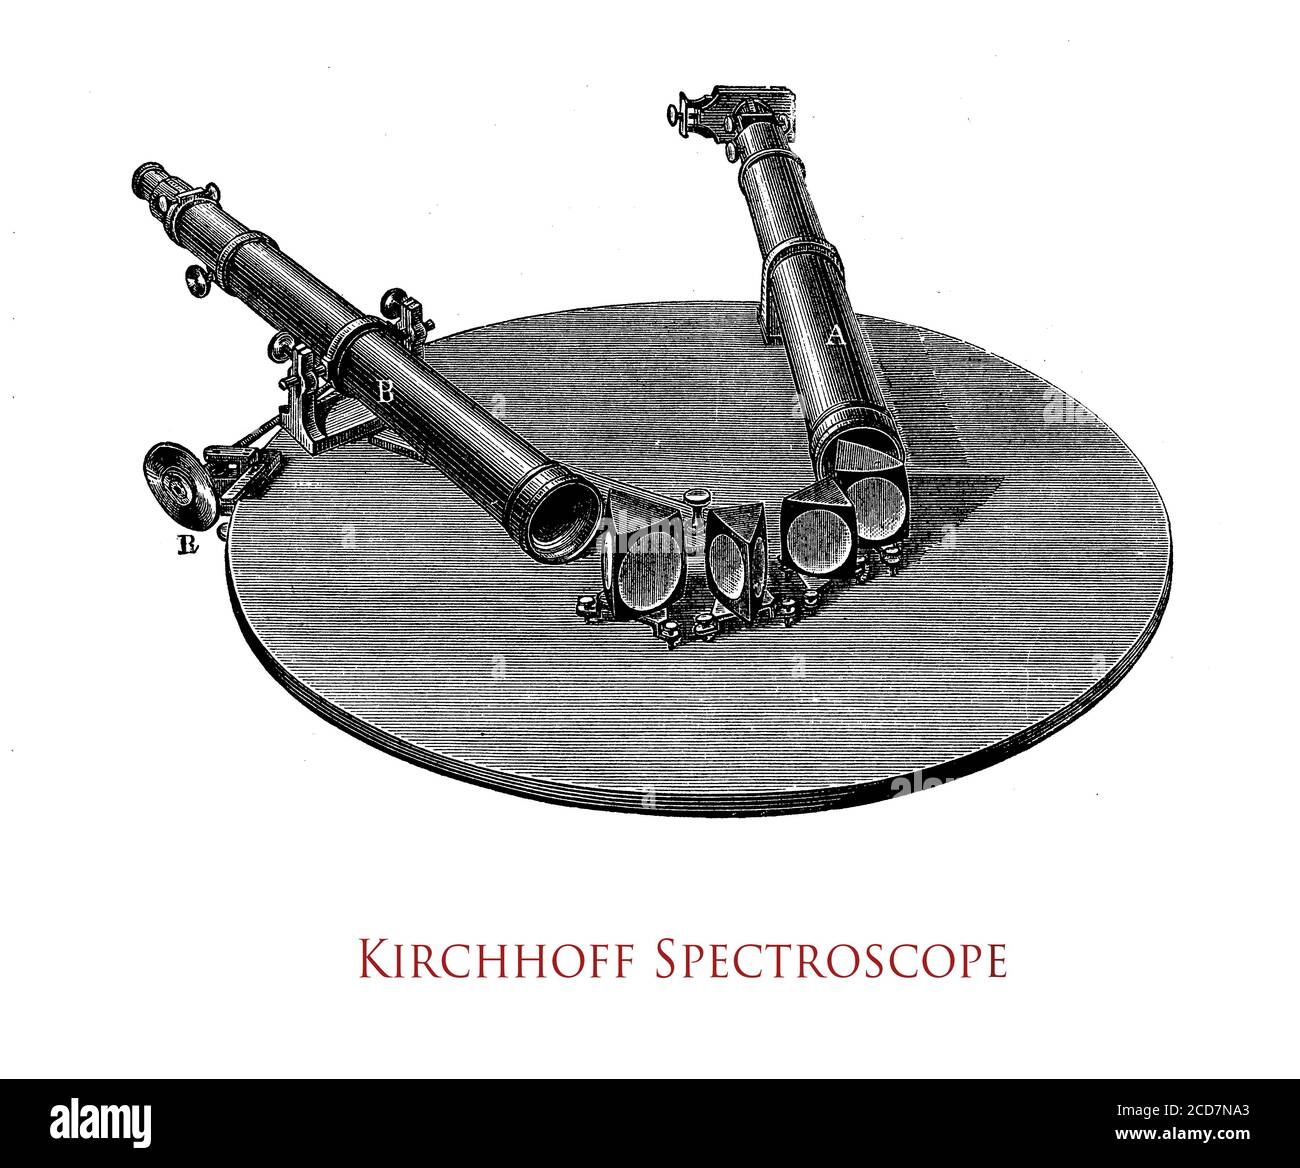 Spectromètre optique ou spectroscope de Kirchhoff, instrument permettant de mesurer les propriétés de la lumière sur une partie spécifique du spectre électromagnétique en analyse spectroscopique pour identifier les matériaux Banque D'Images